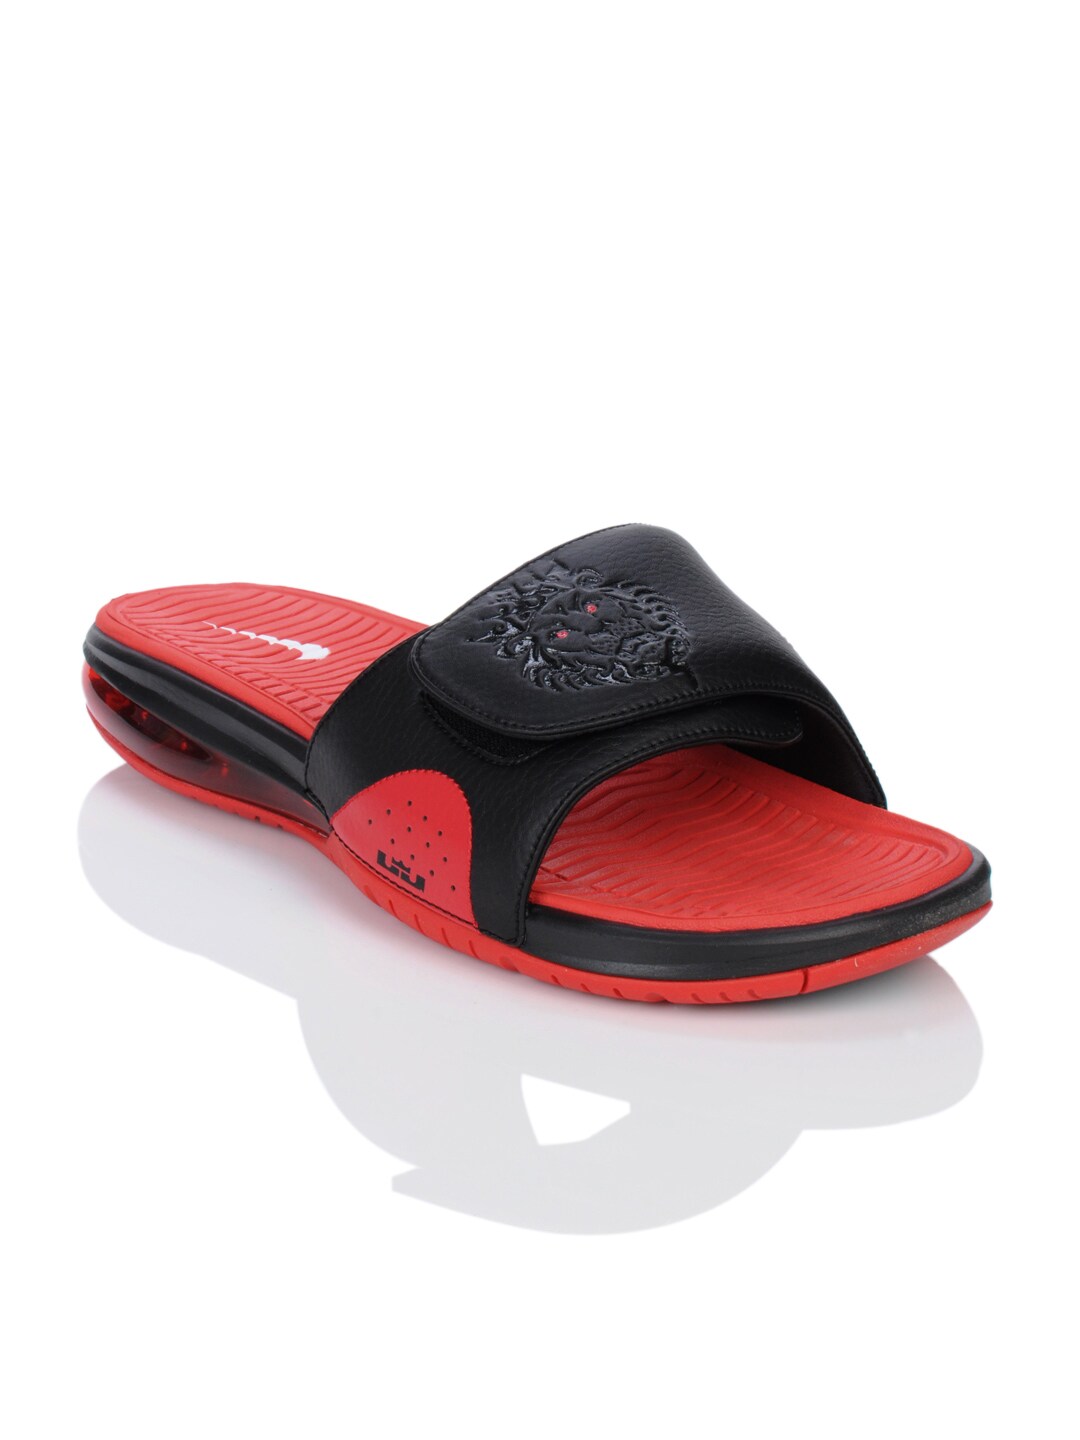 Nike Men Lebron Slide Red Sandals